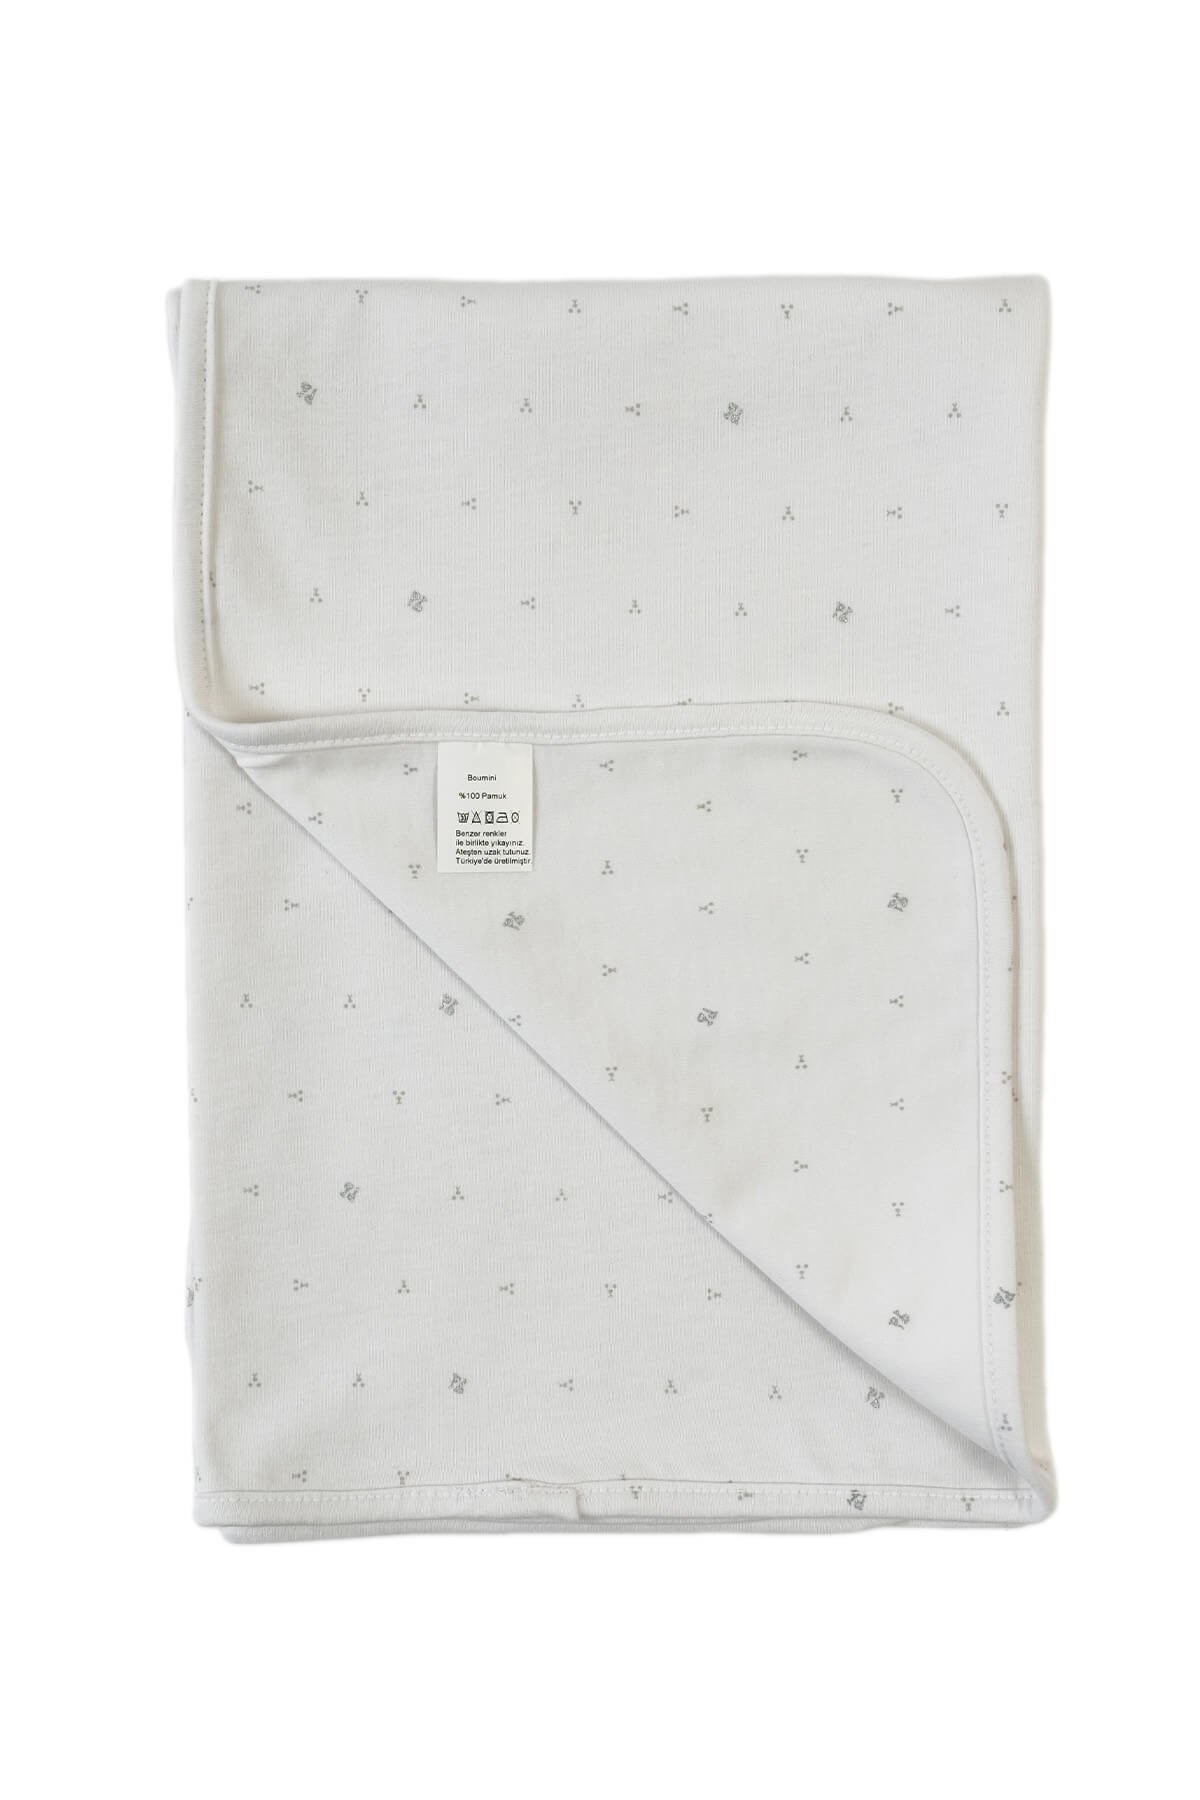 Boumini Kalın Penye Battaniye Çift Katlı Doğal Pamuk Beyaz 80x80 cm